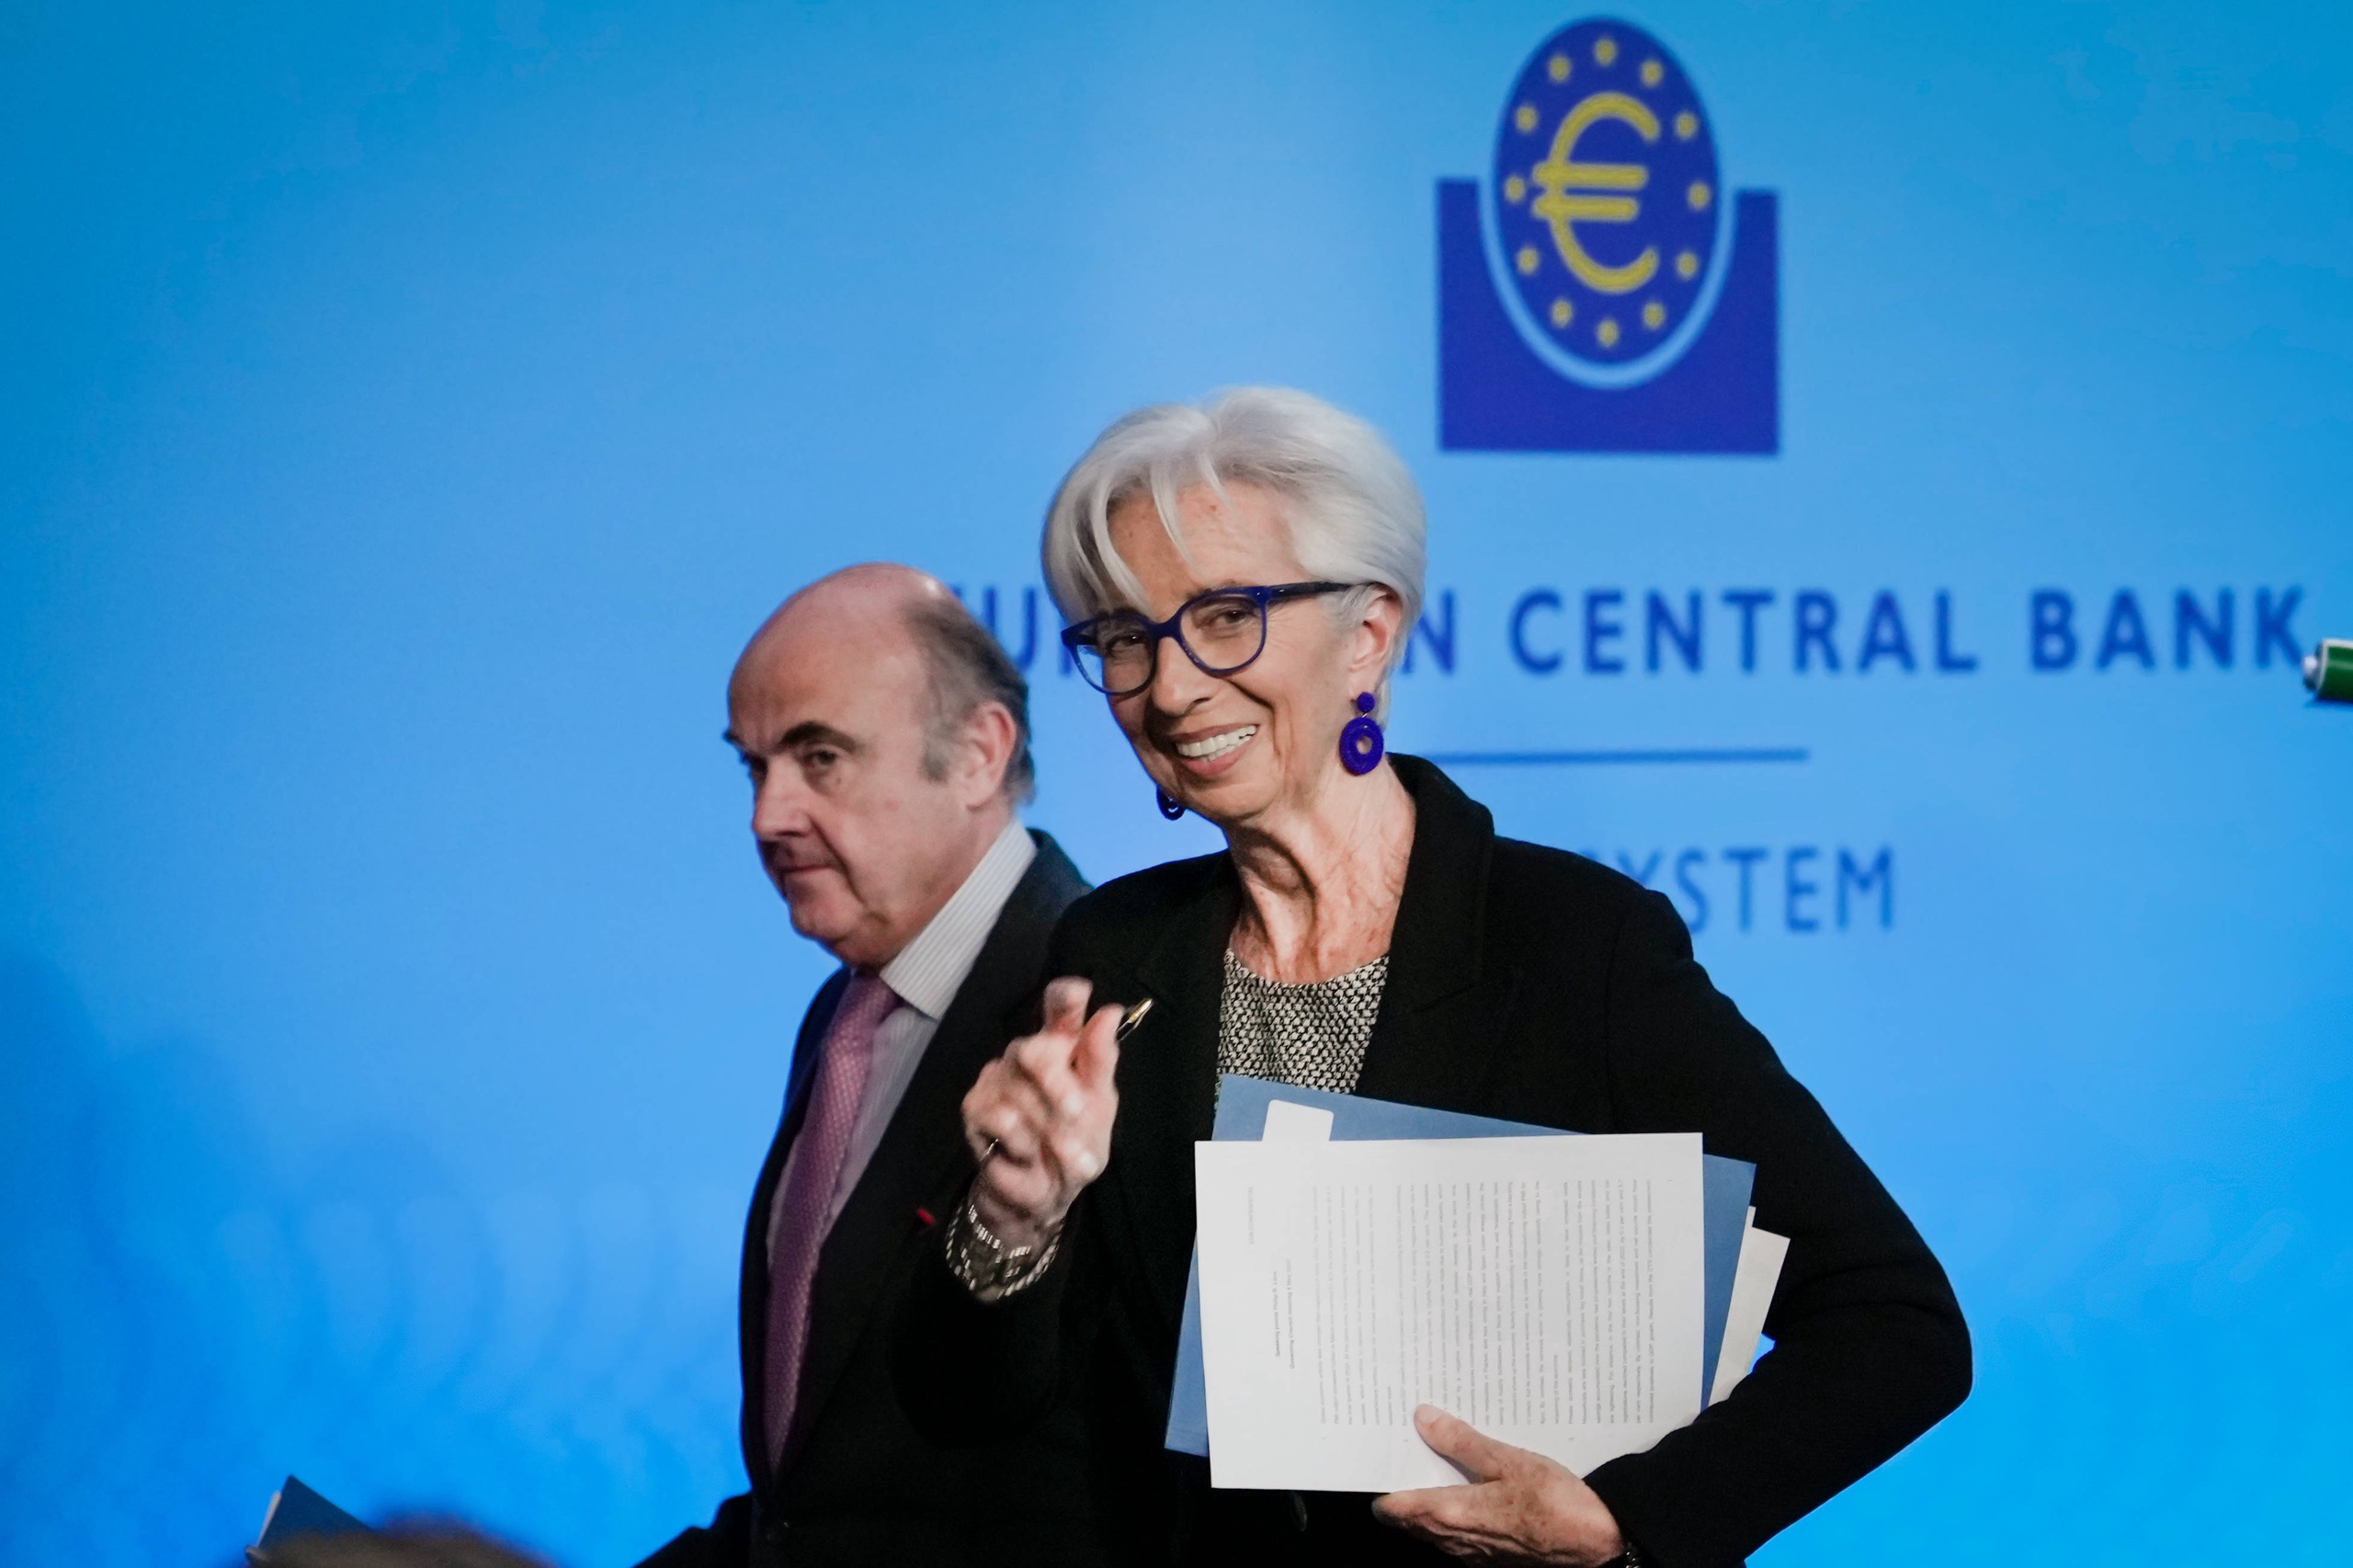 De renteverhogingen zijn volgens president Christine Lagarde van de ECB nog altijd nodig om de hoge inflatie de kop in te drukken. 